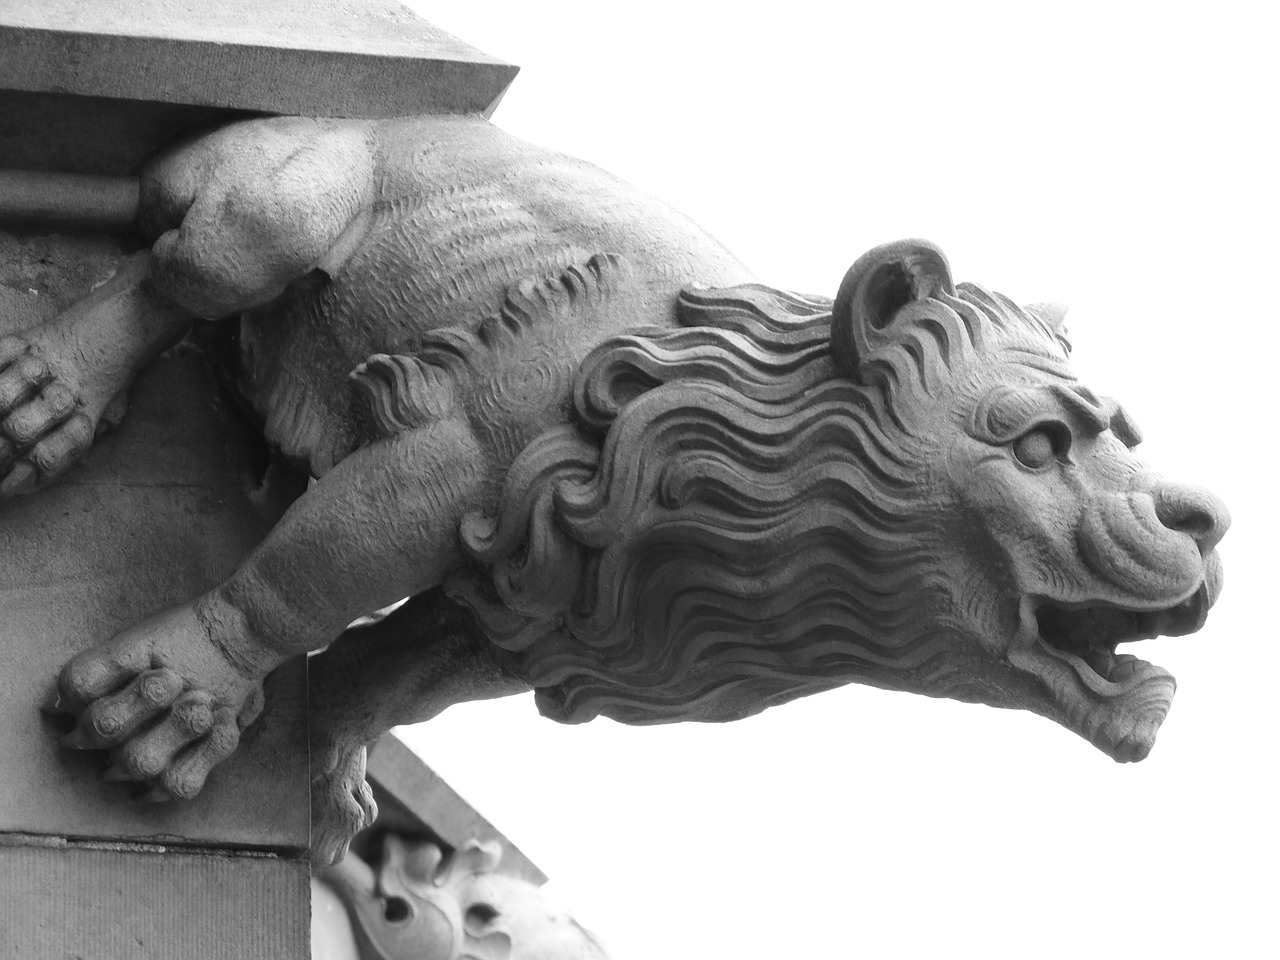 gargoyle lion mythical creatures free photo